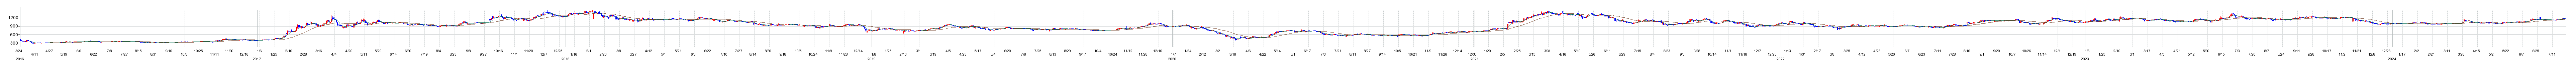 ウイルプラスホールディングスの株価チャート